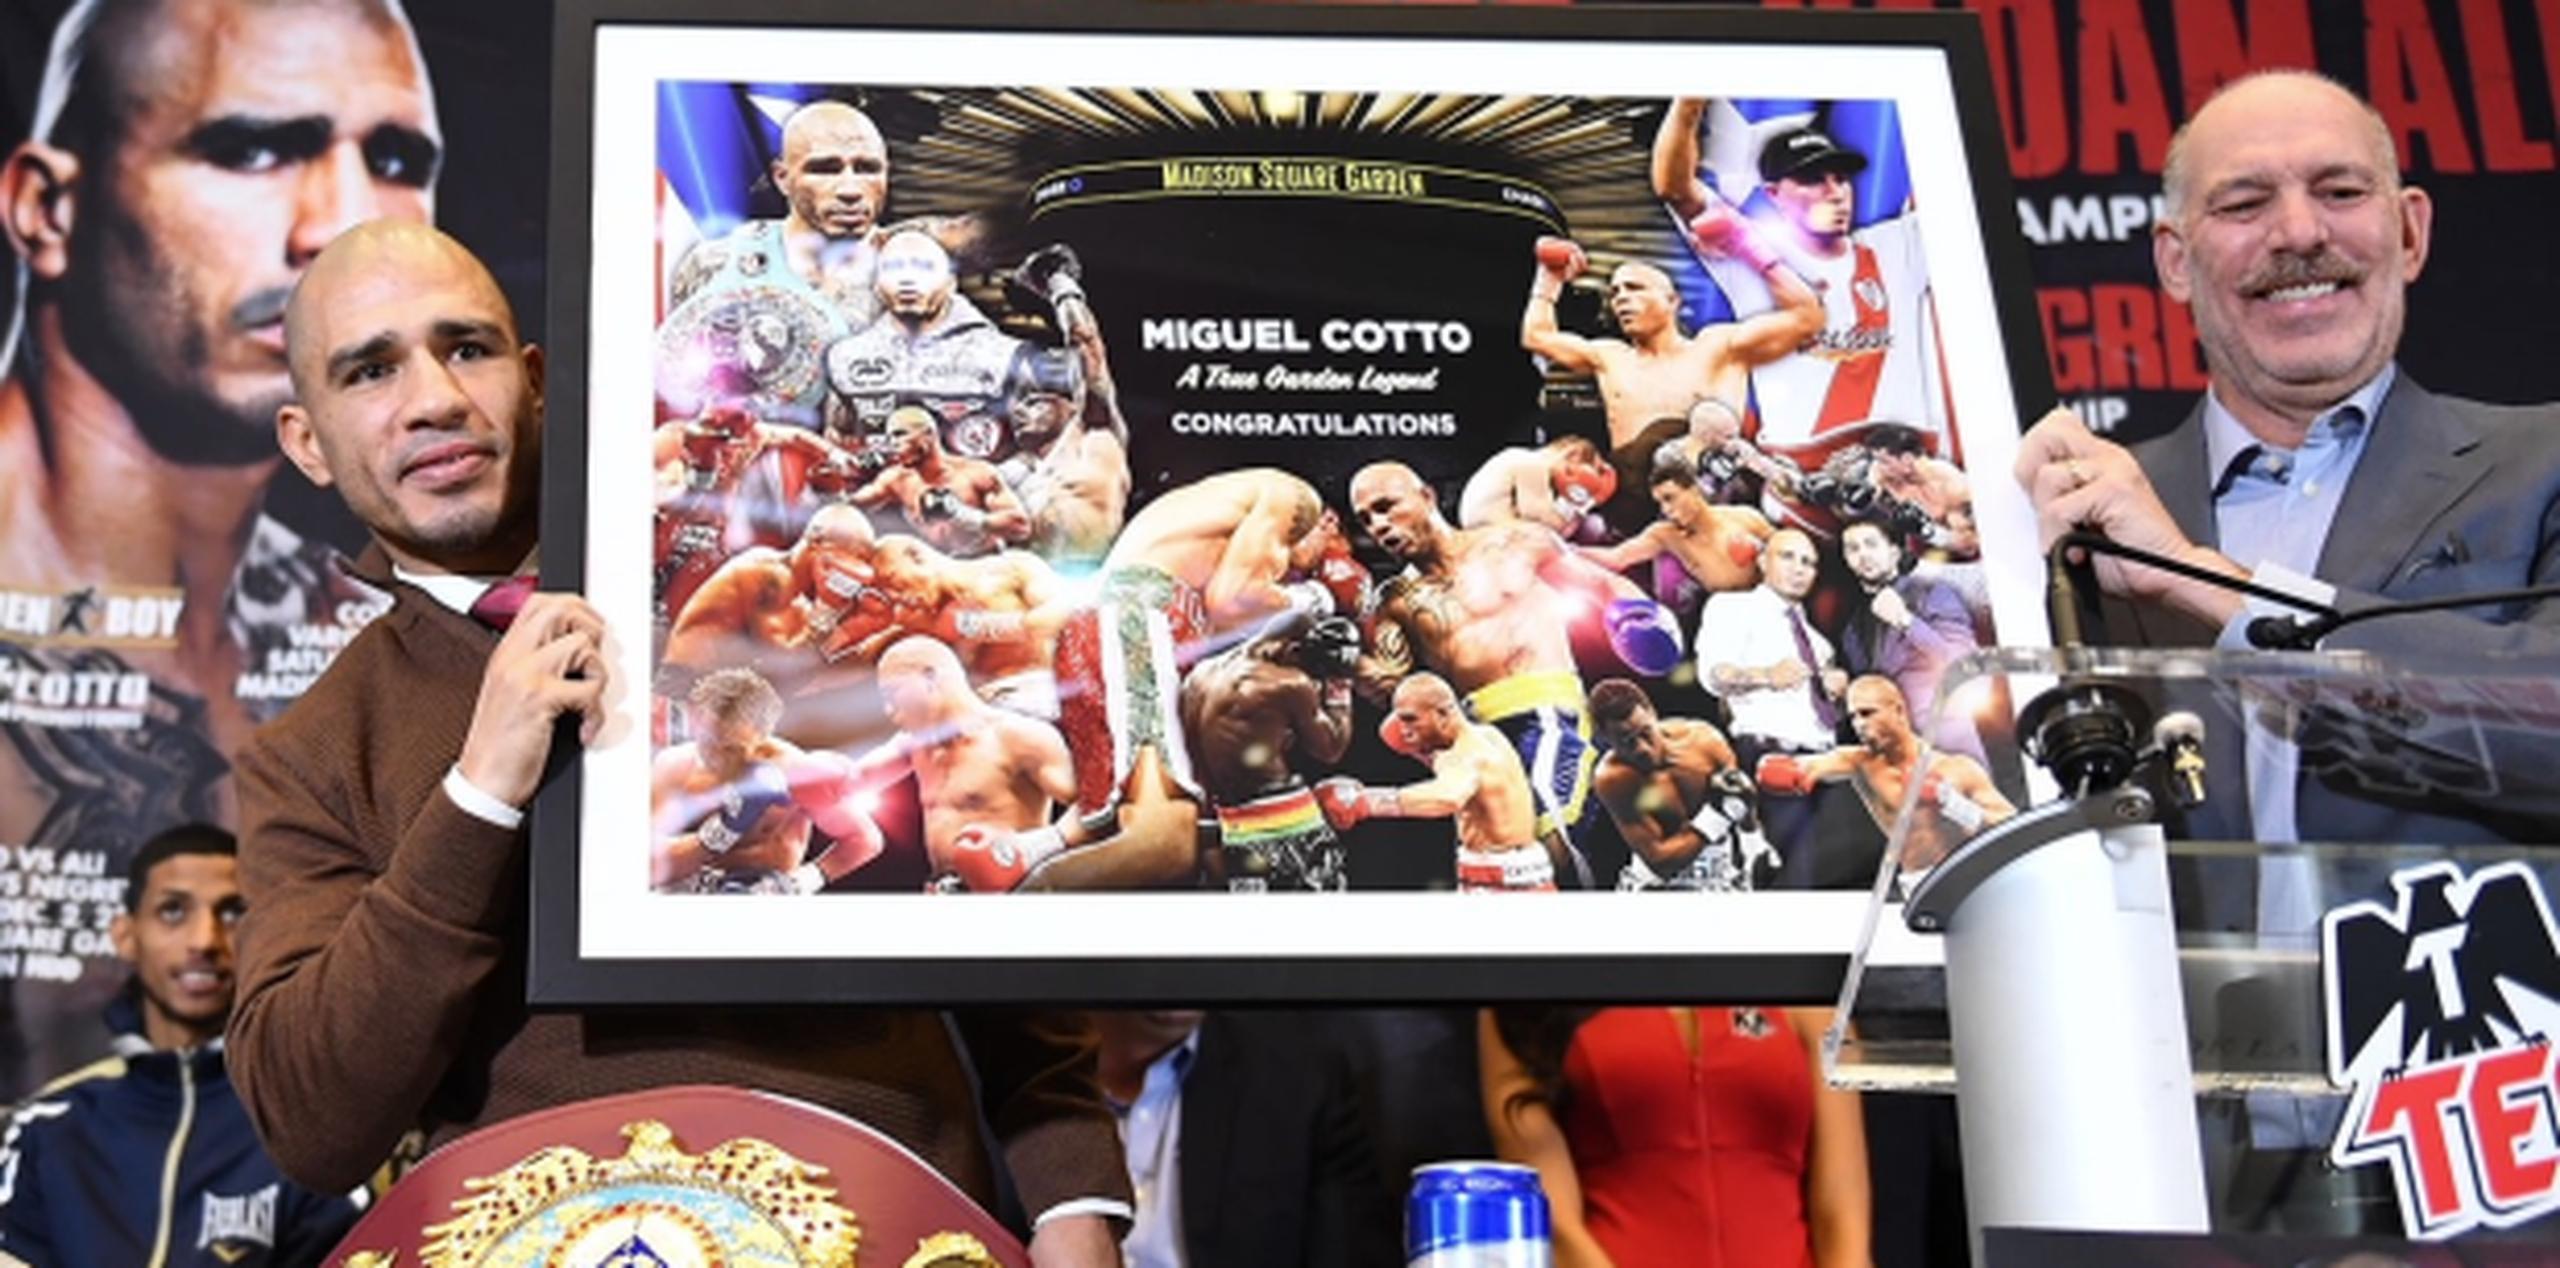 Joel Fisher, vicepresidente ejecutivo del Madison Square Garden, le entregó a Miguel Cotto un cuadro que resume las peleas que hizo en el legendario recinto de Nueva York. (Héctor Santos Guía/ Miguel Cotto Promotions)